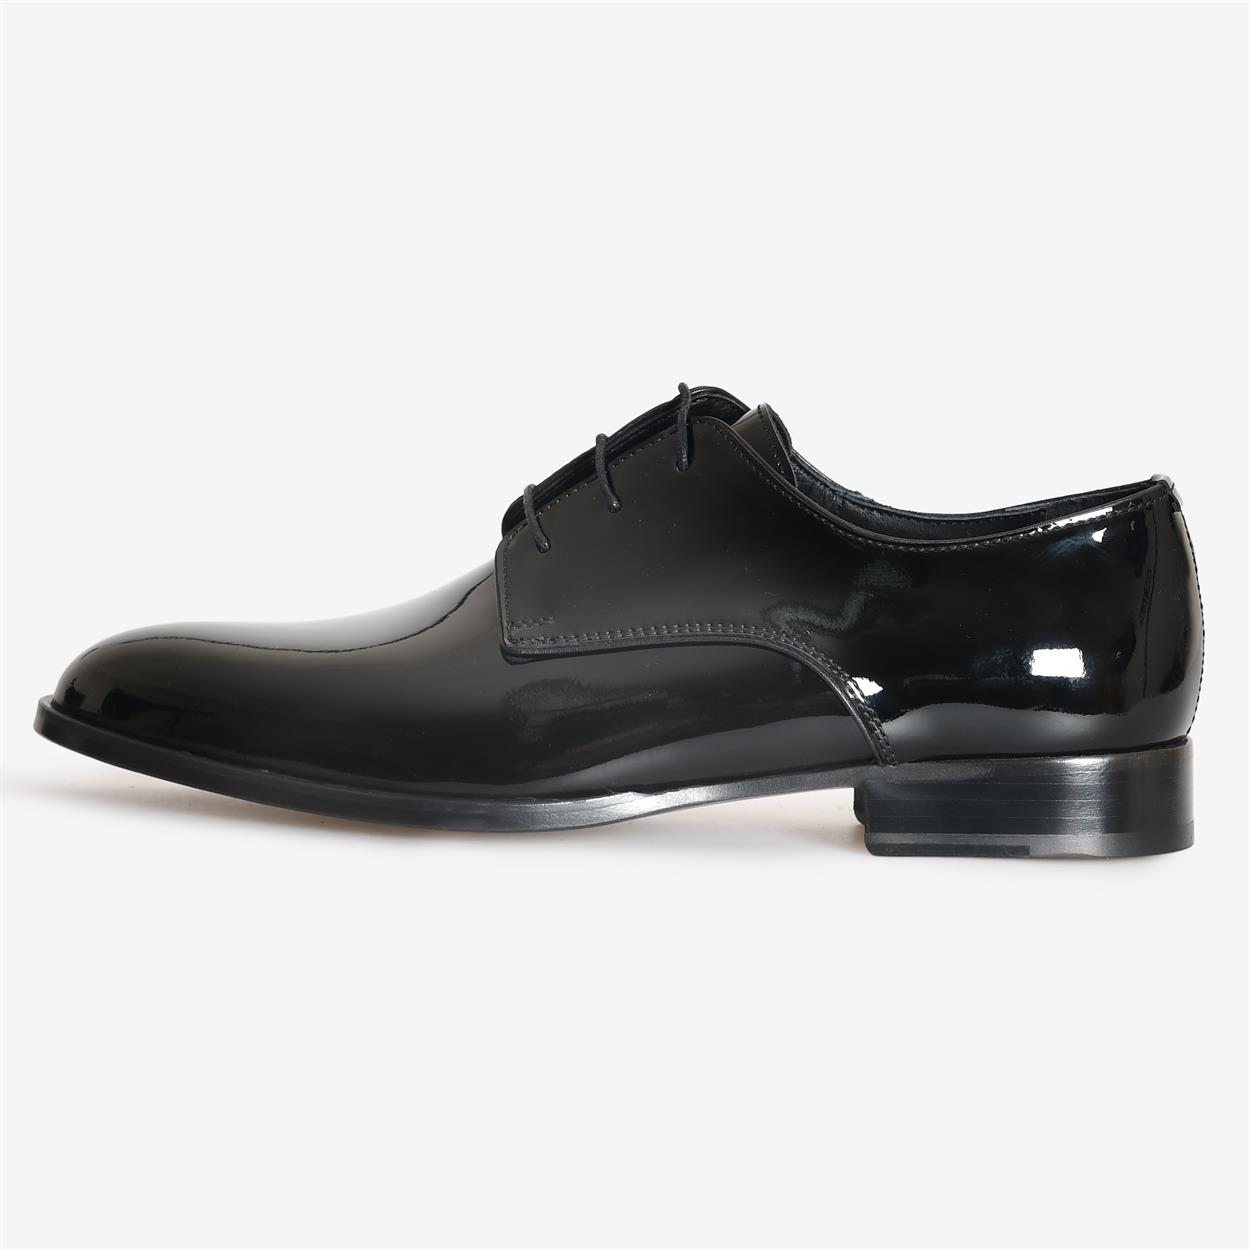 Siyah Rugan Bağcıklı Klasik Ayakkabı | Flower Ayakkabı